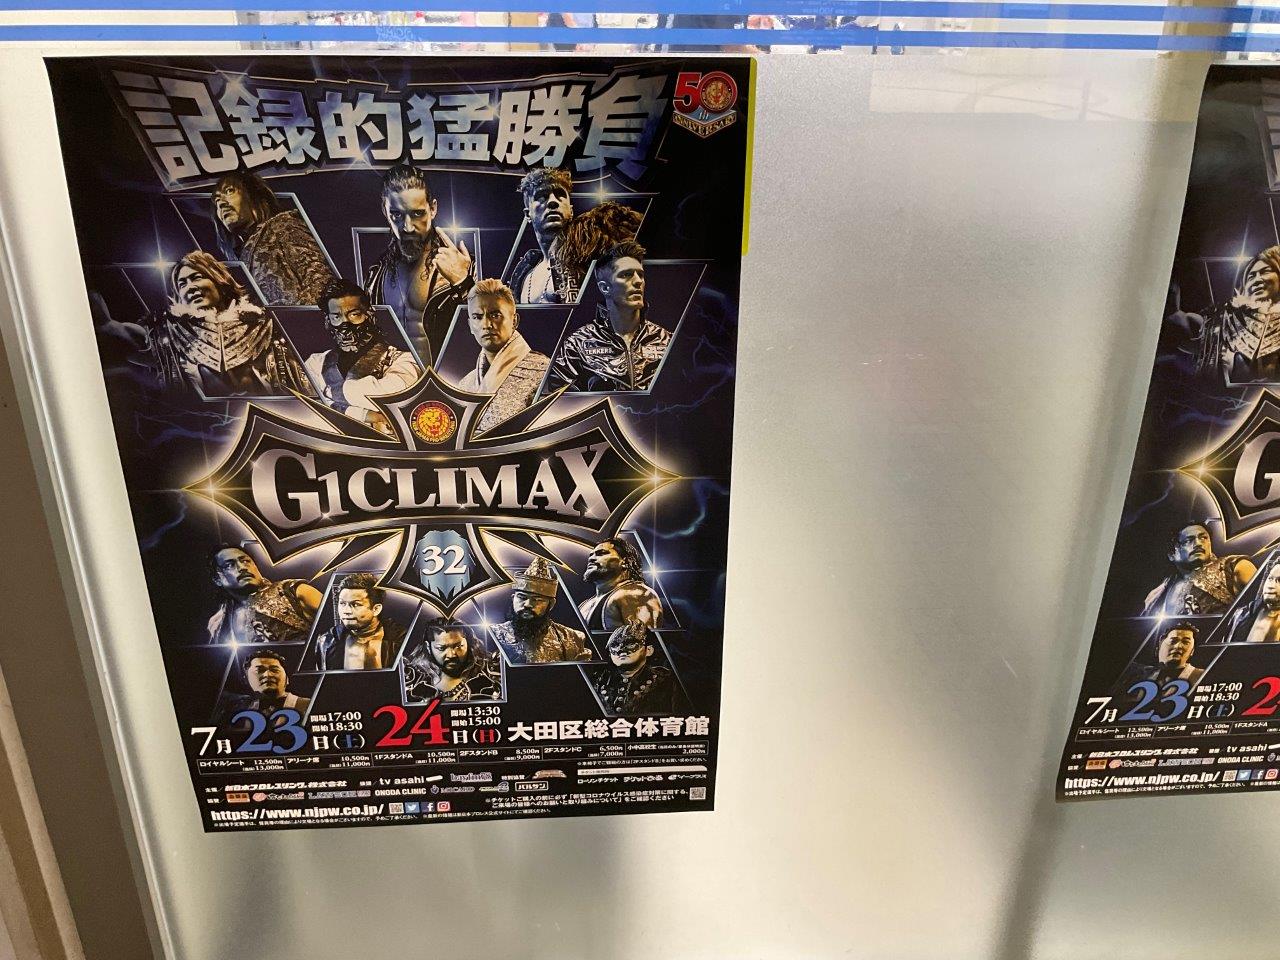 新日本プロレスG1クライマックス2022年7月23日、24日ポスター